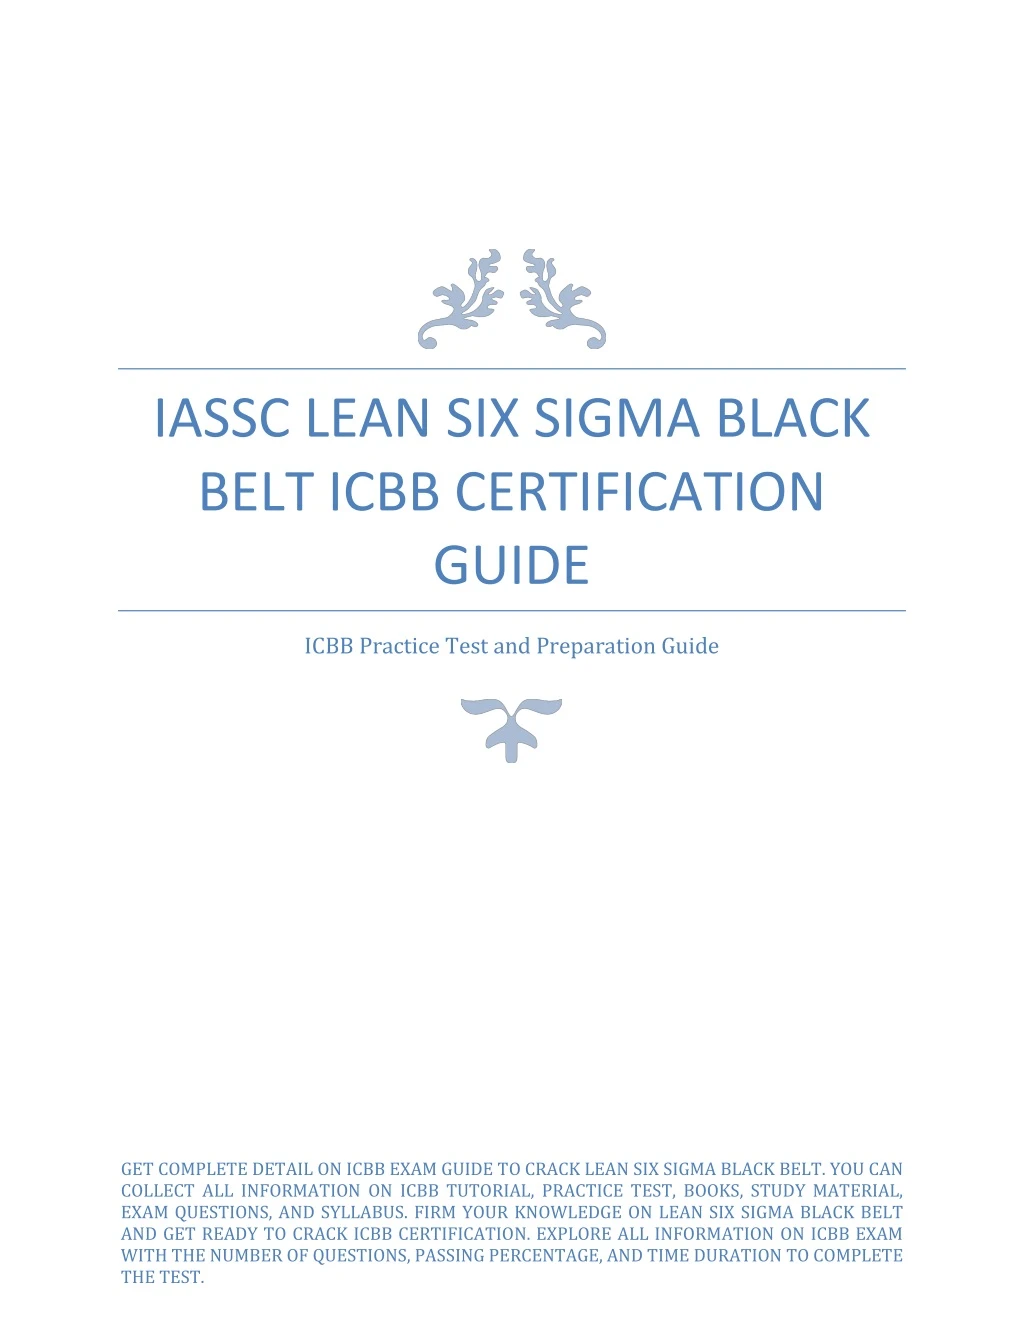 iassc lean six sigma black belt icbb